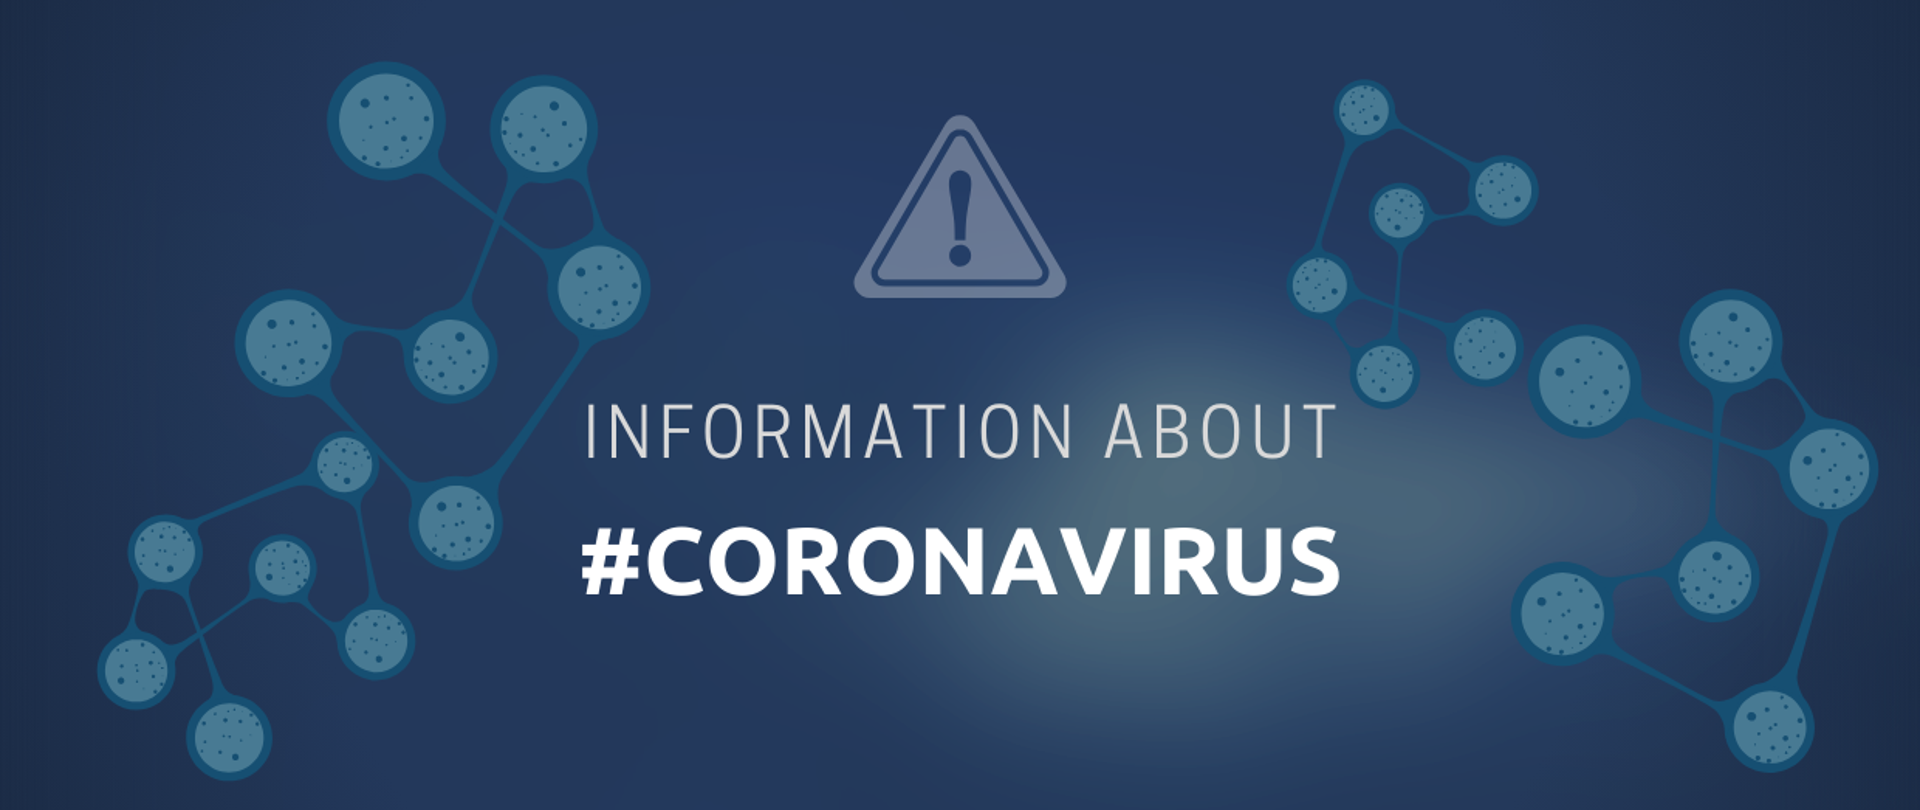 Information about #Coronavirus